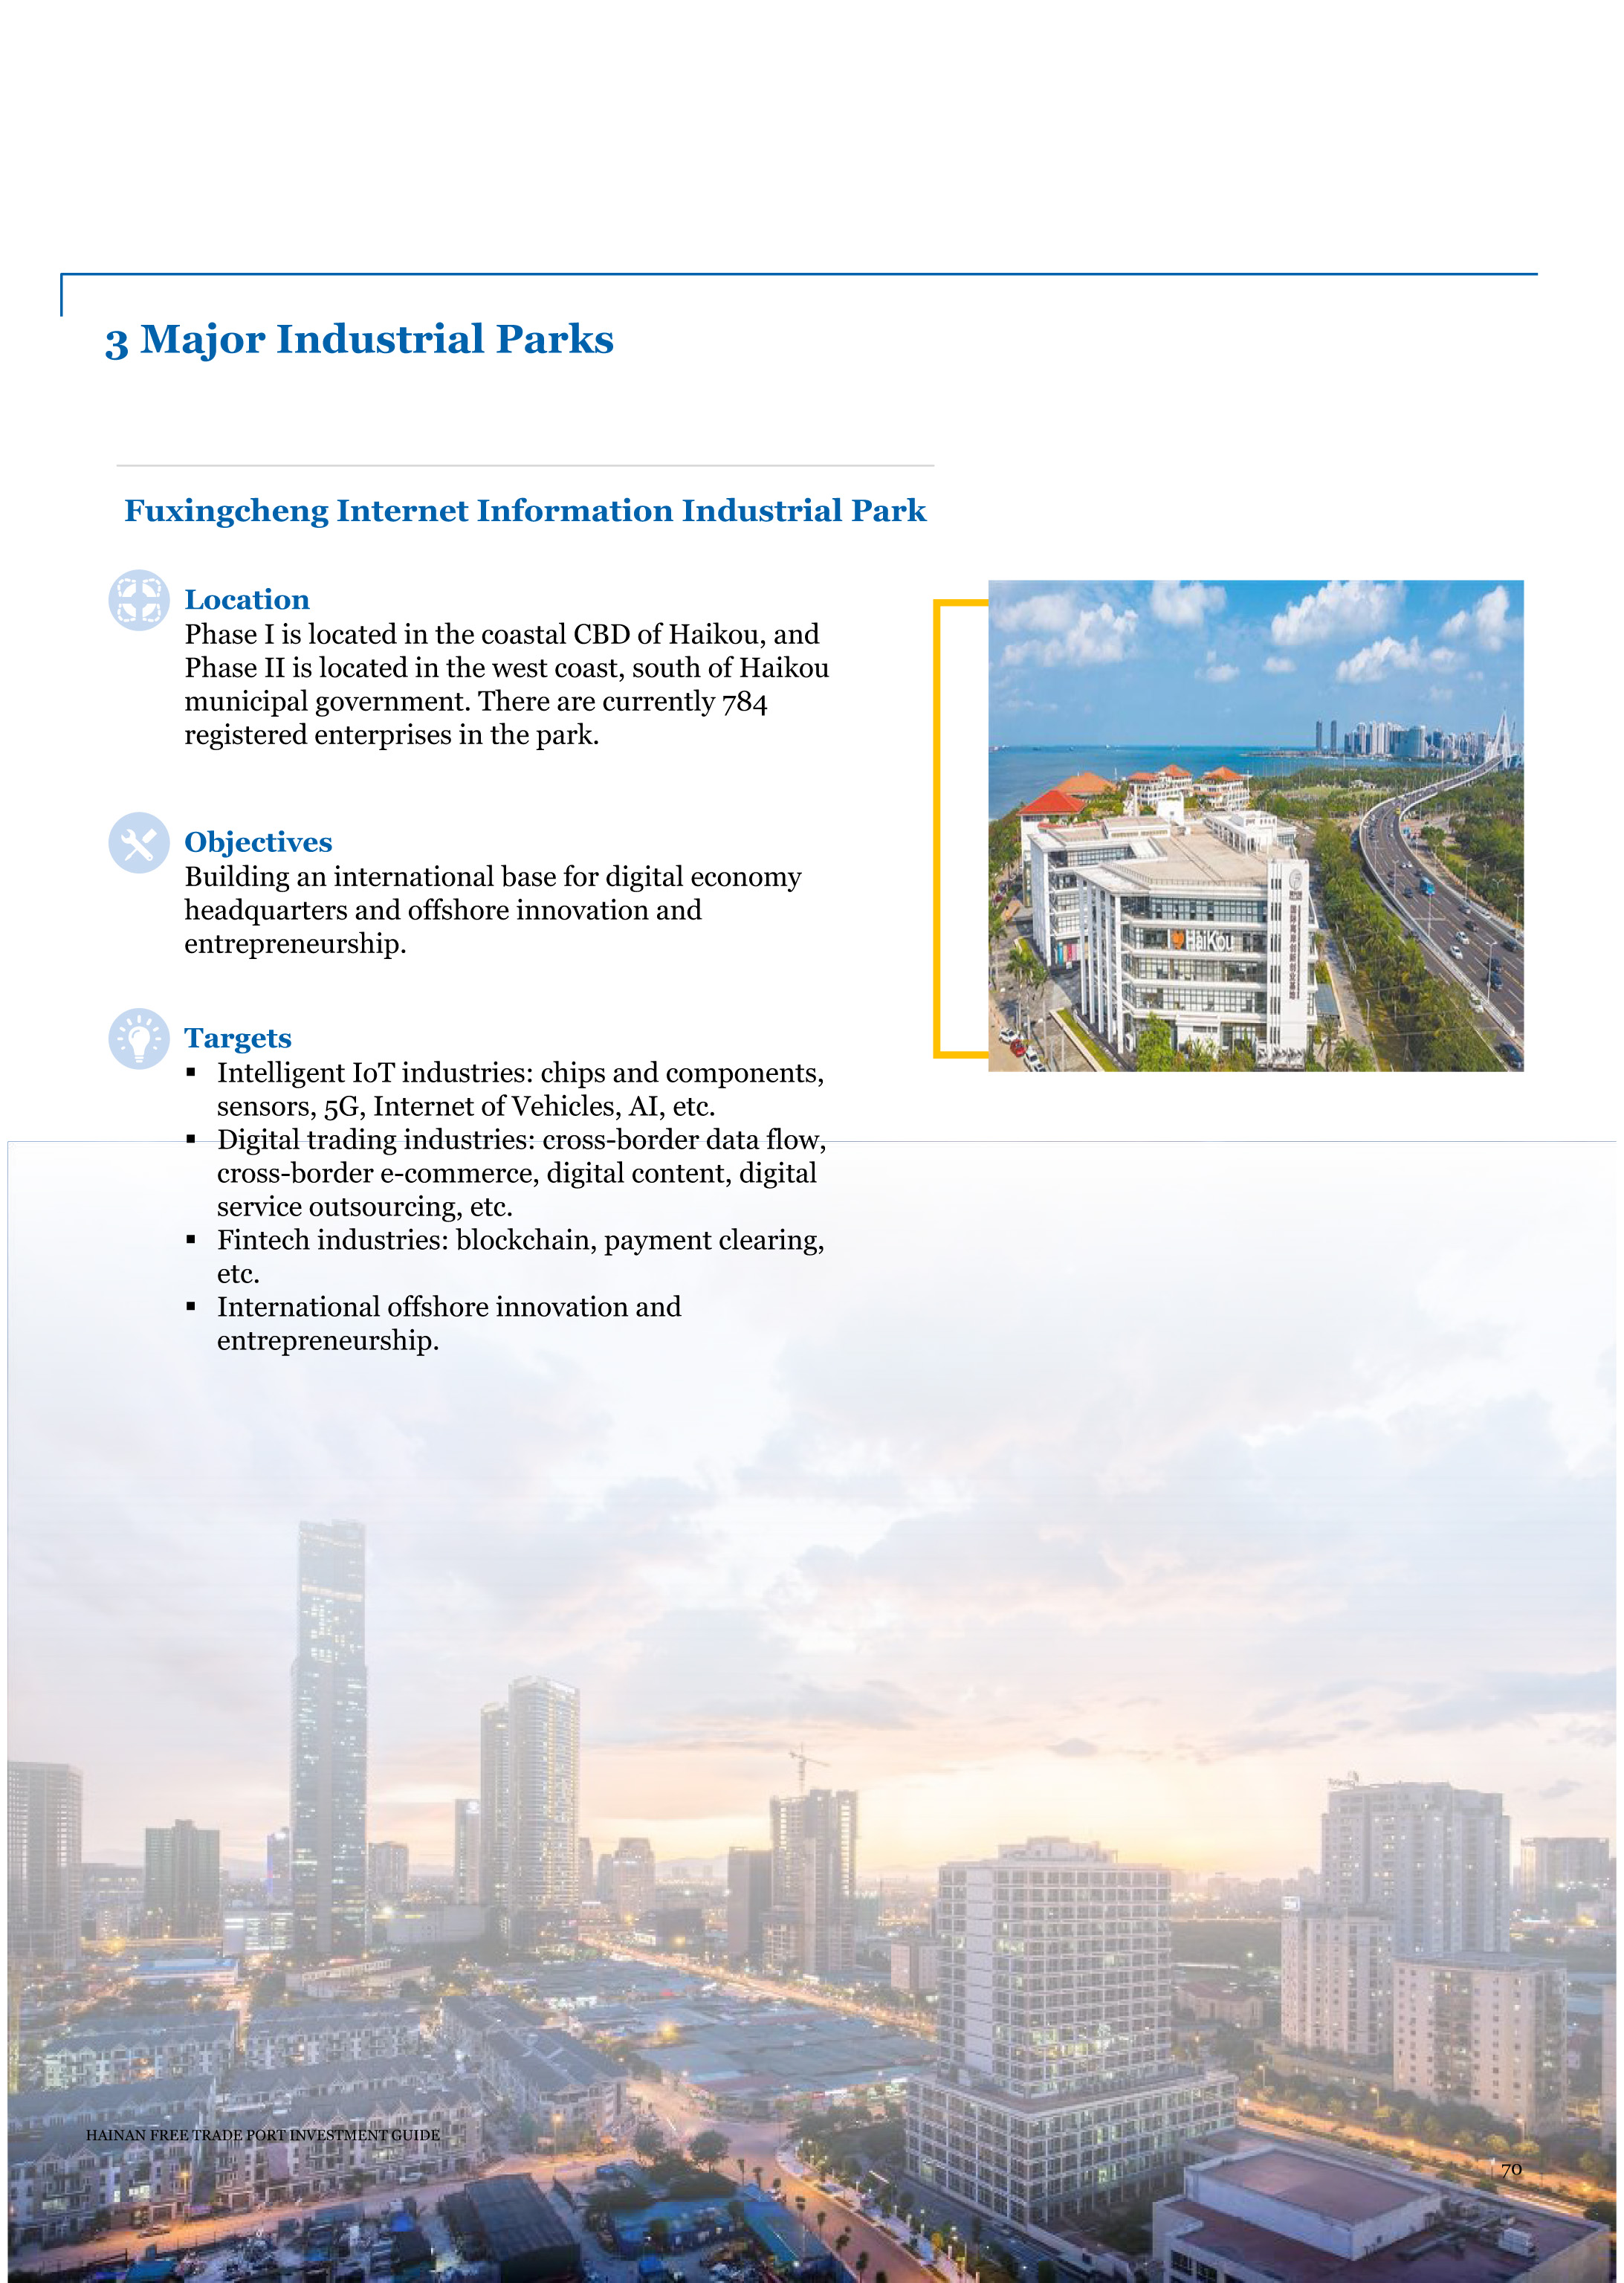 2020海南自由贸易港投资指南—EN-72.jpg